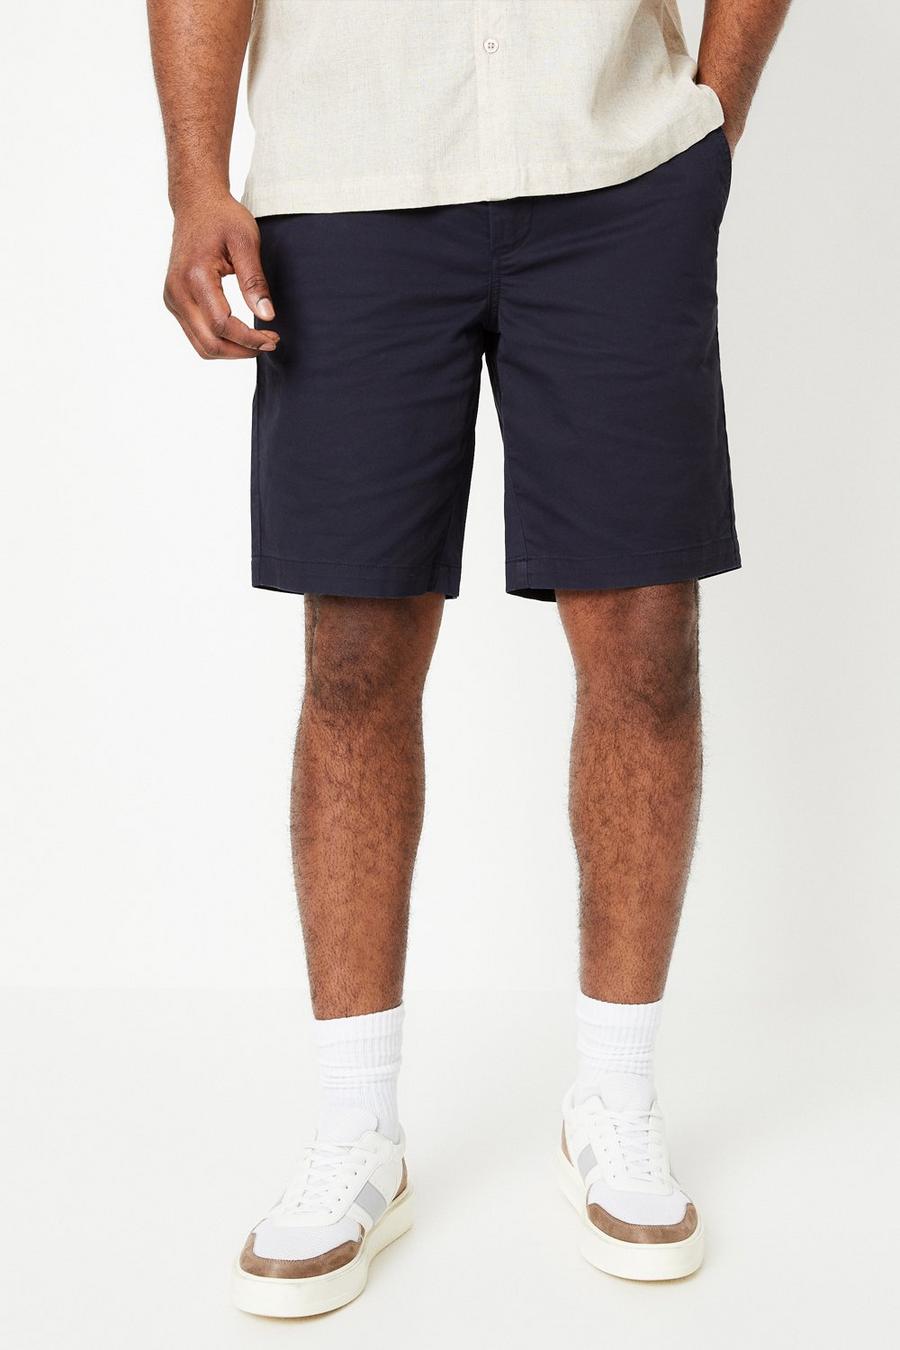 Classic Navy Chino Shorts